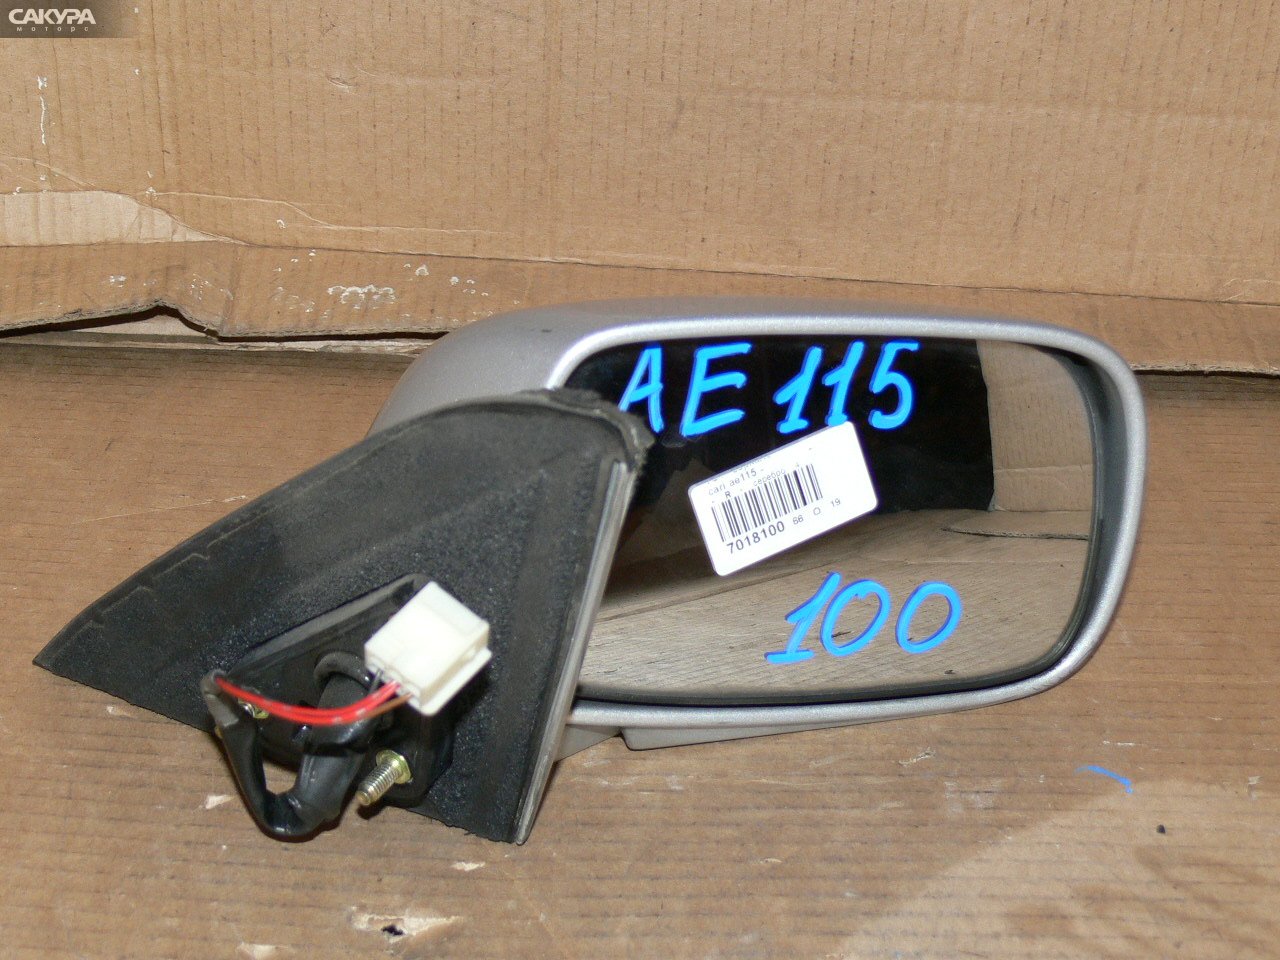 Зеркало боковое правое Toyota Sprinter Carib AE115G: купить в Сакура Иркутск.